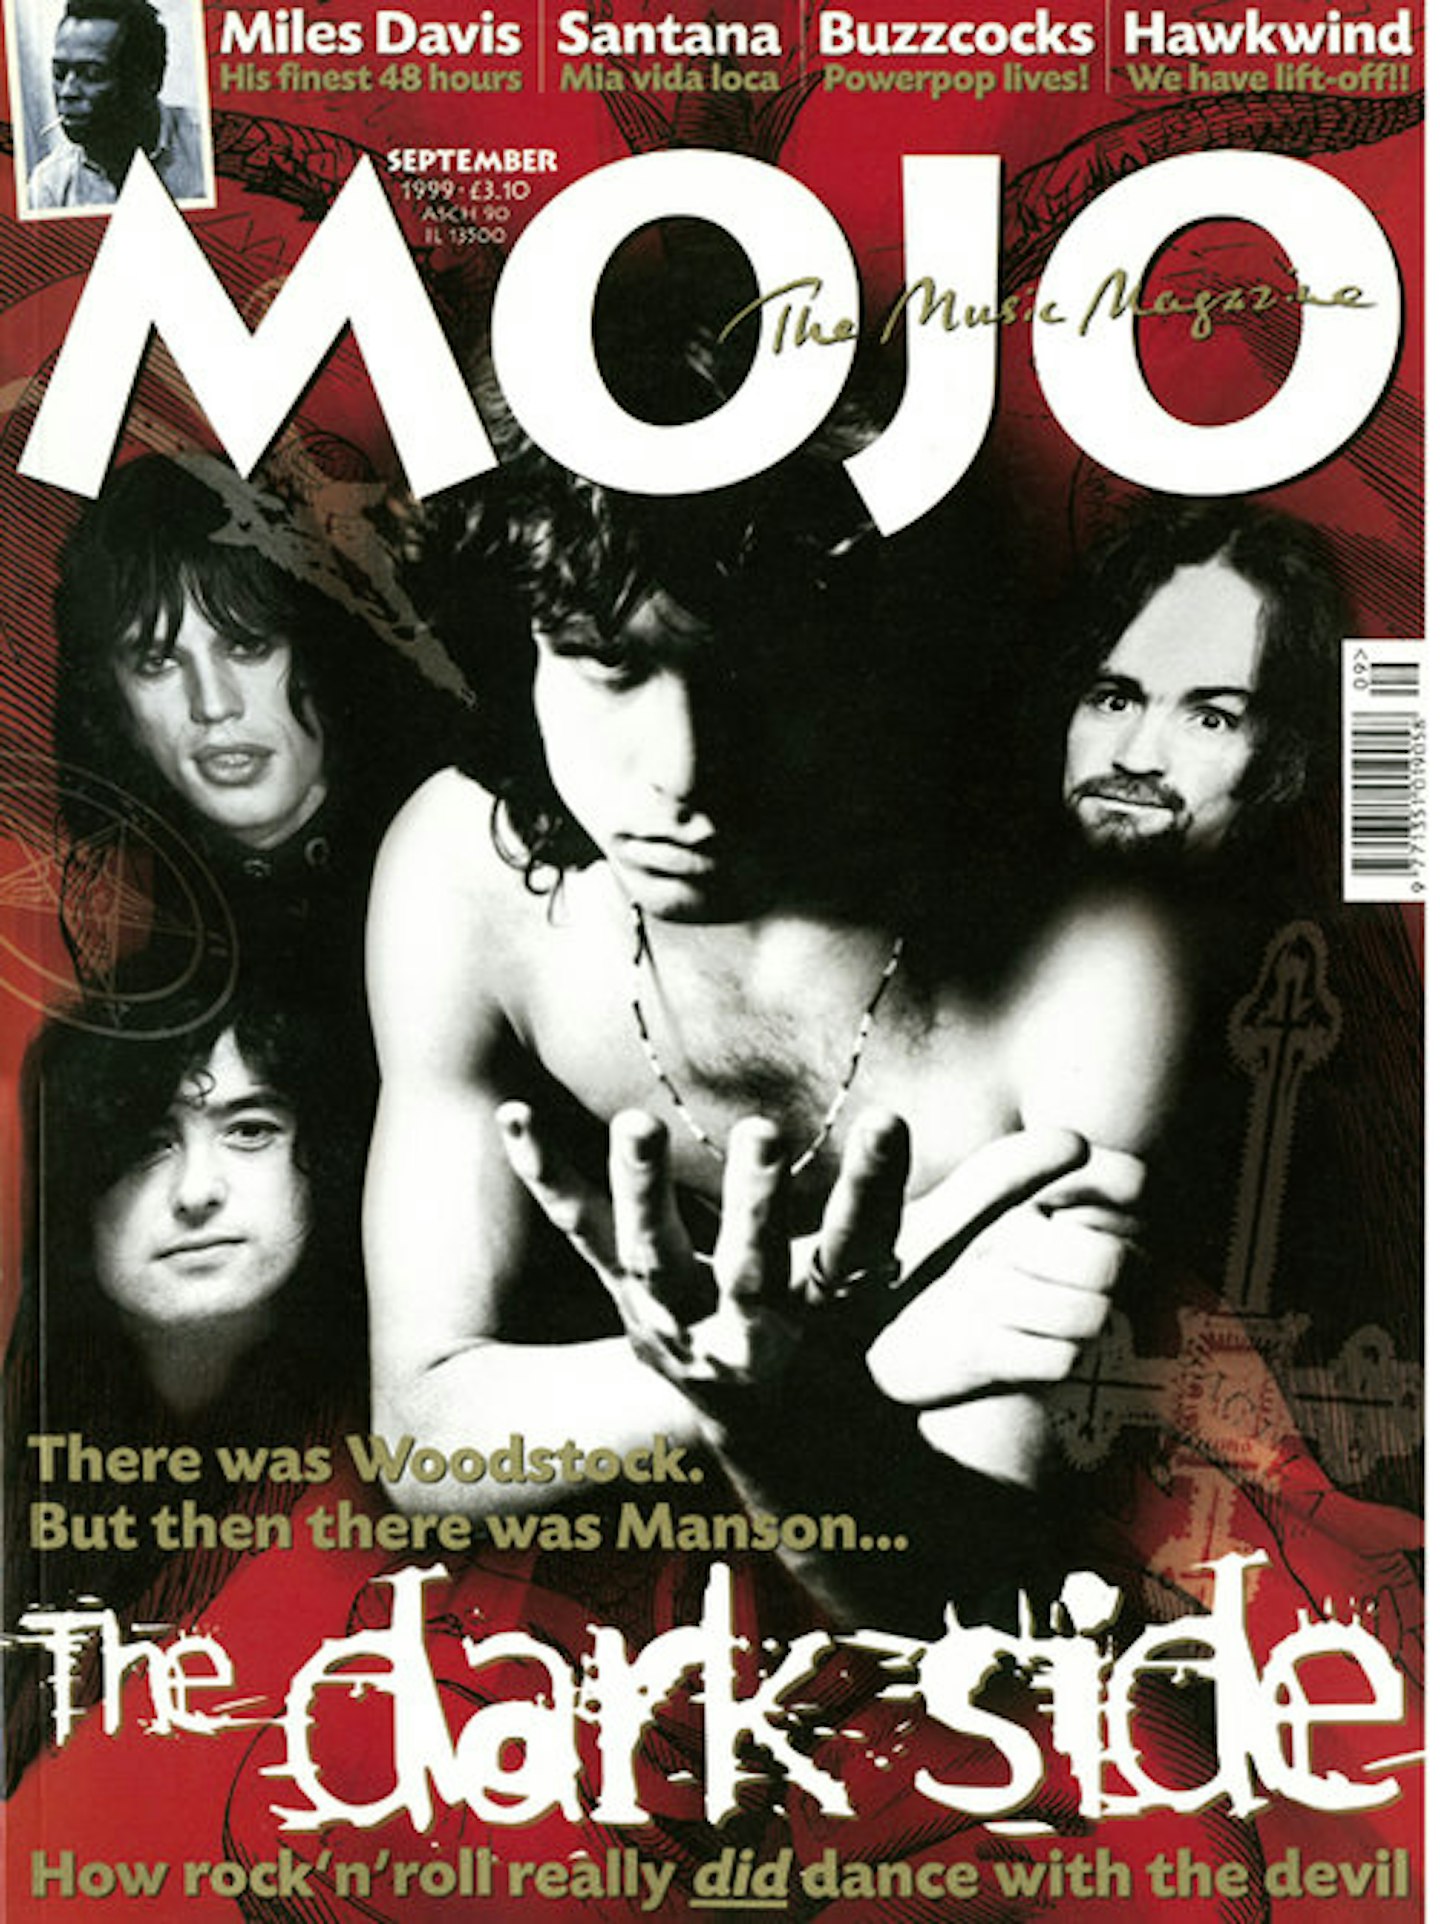 MOJO Issue 70 / September 1999